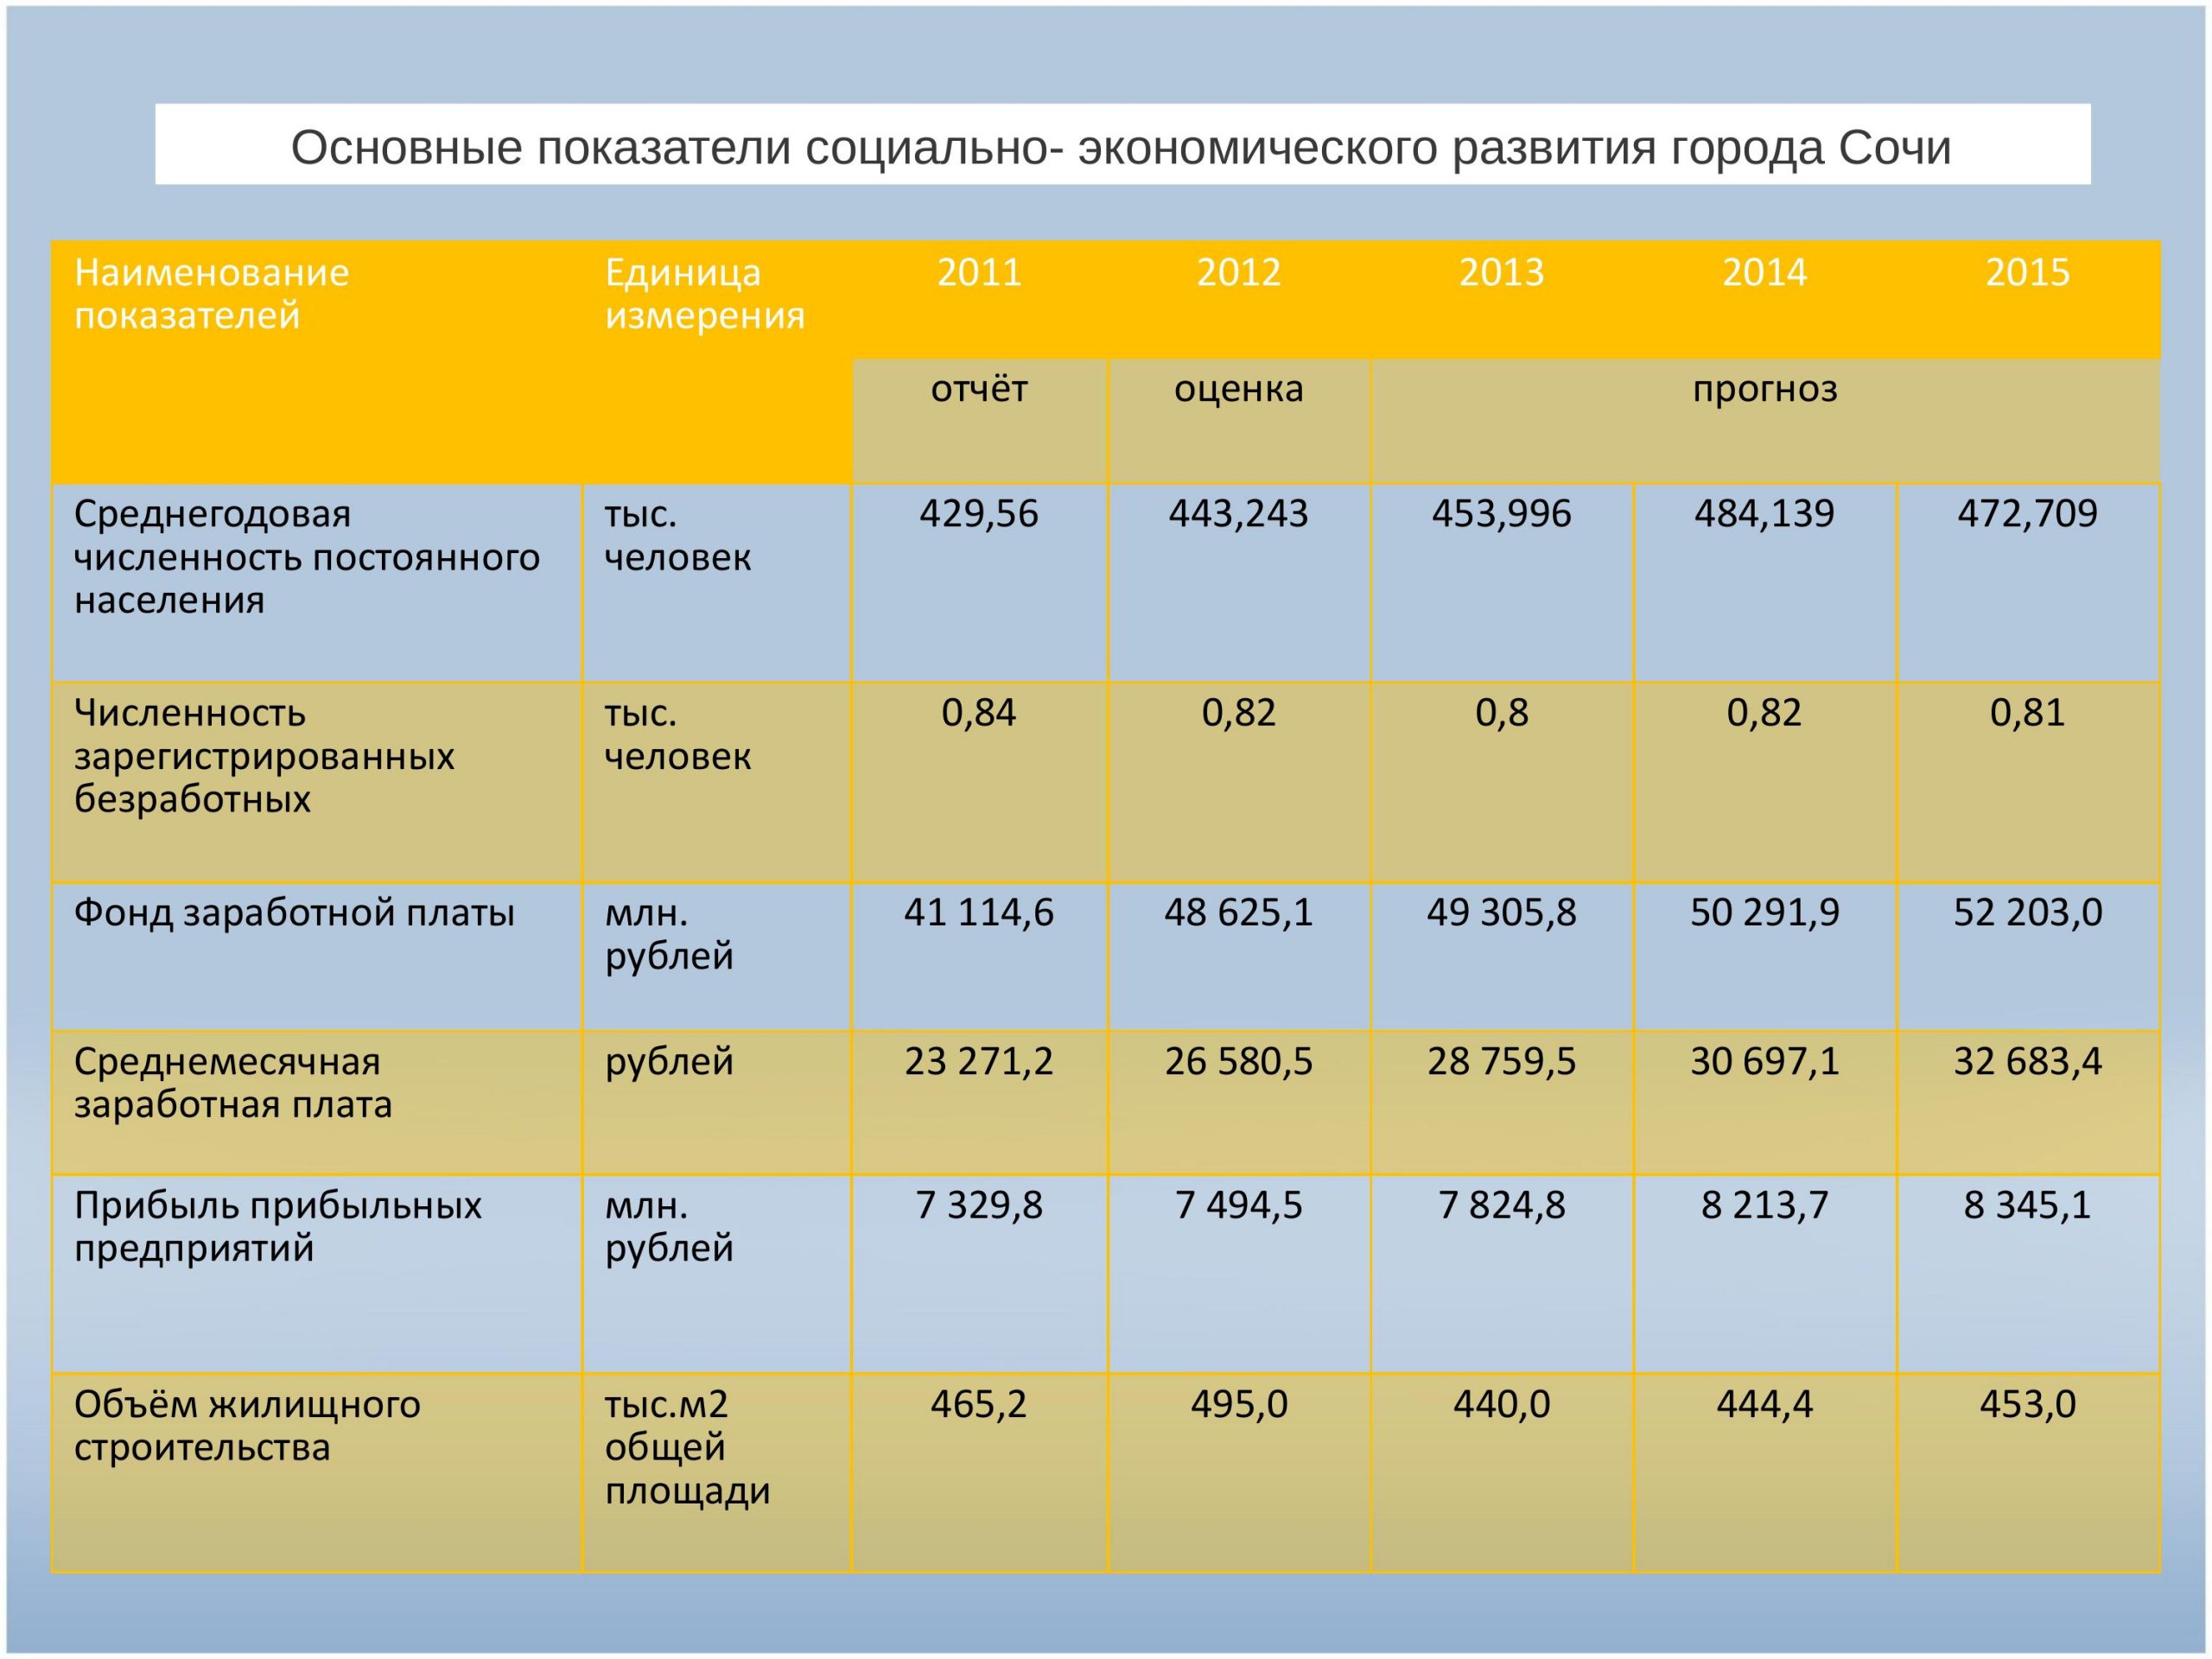 Сайт минсоцразвития московской области. Муниципальное предприятие бюджетное. Фон для бюджета для граждан желтого.